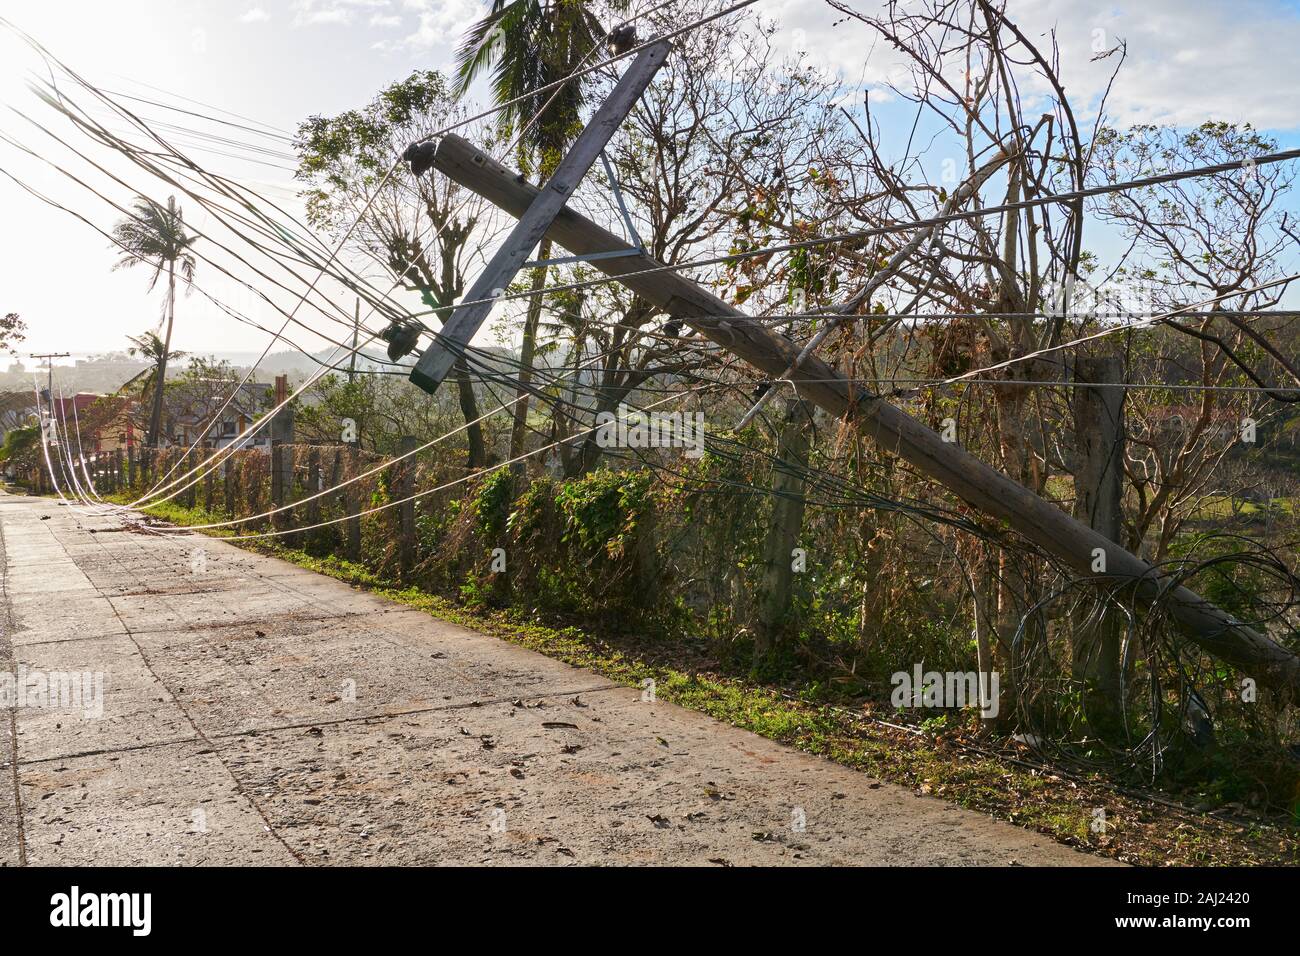 Die Insel Boracay, Aklan Provinz, Philippinen: Taifun Ursula verursachten umgestürzte Bäume, Stromleitungen, strukturelle Schäden auf Boracay Stockfoto